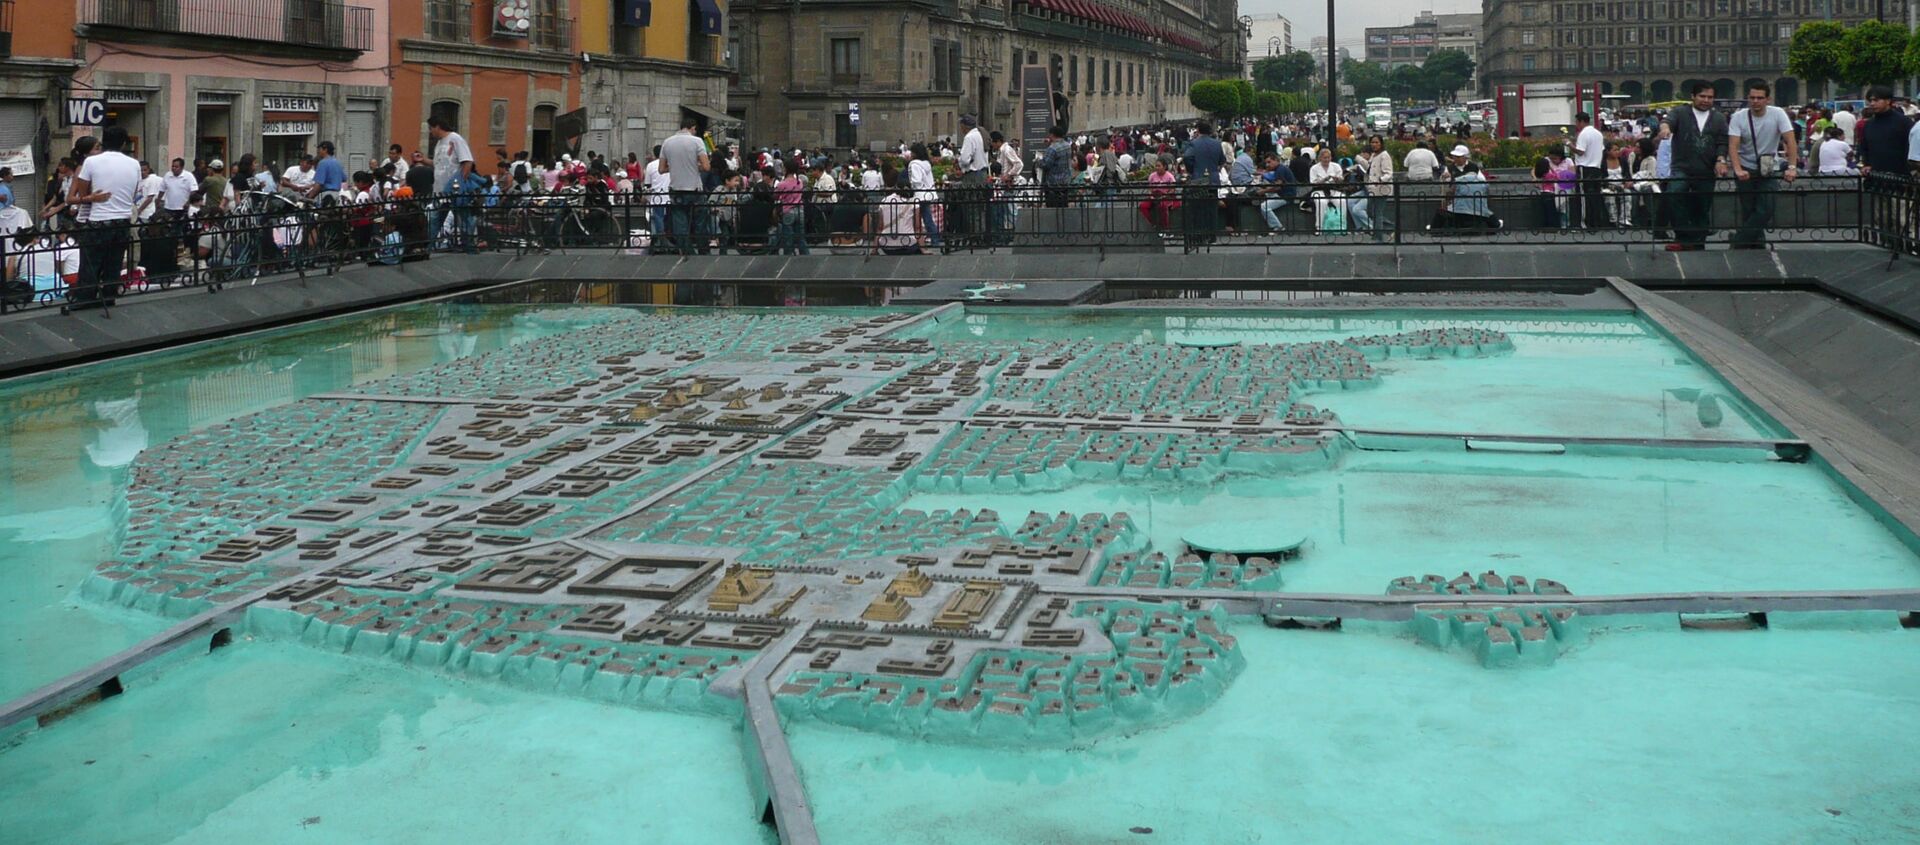 El modelo de Tenochtitlan en la Ciudad de México - Sputnik Mundo, 1920, 13.08.2020